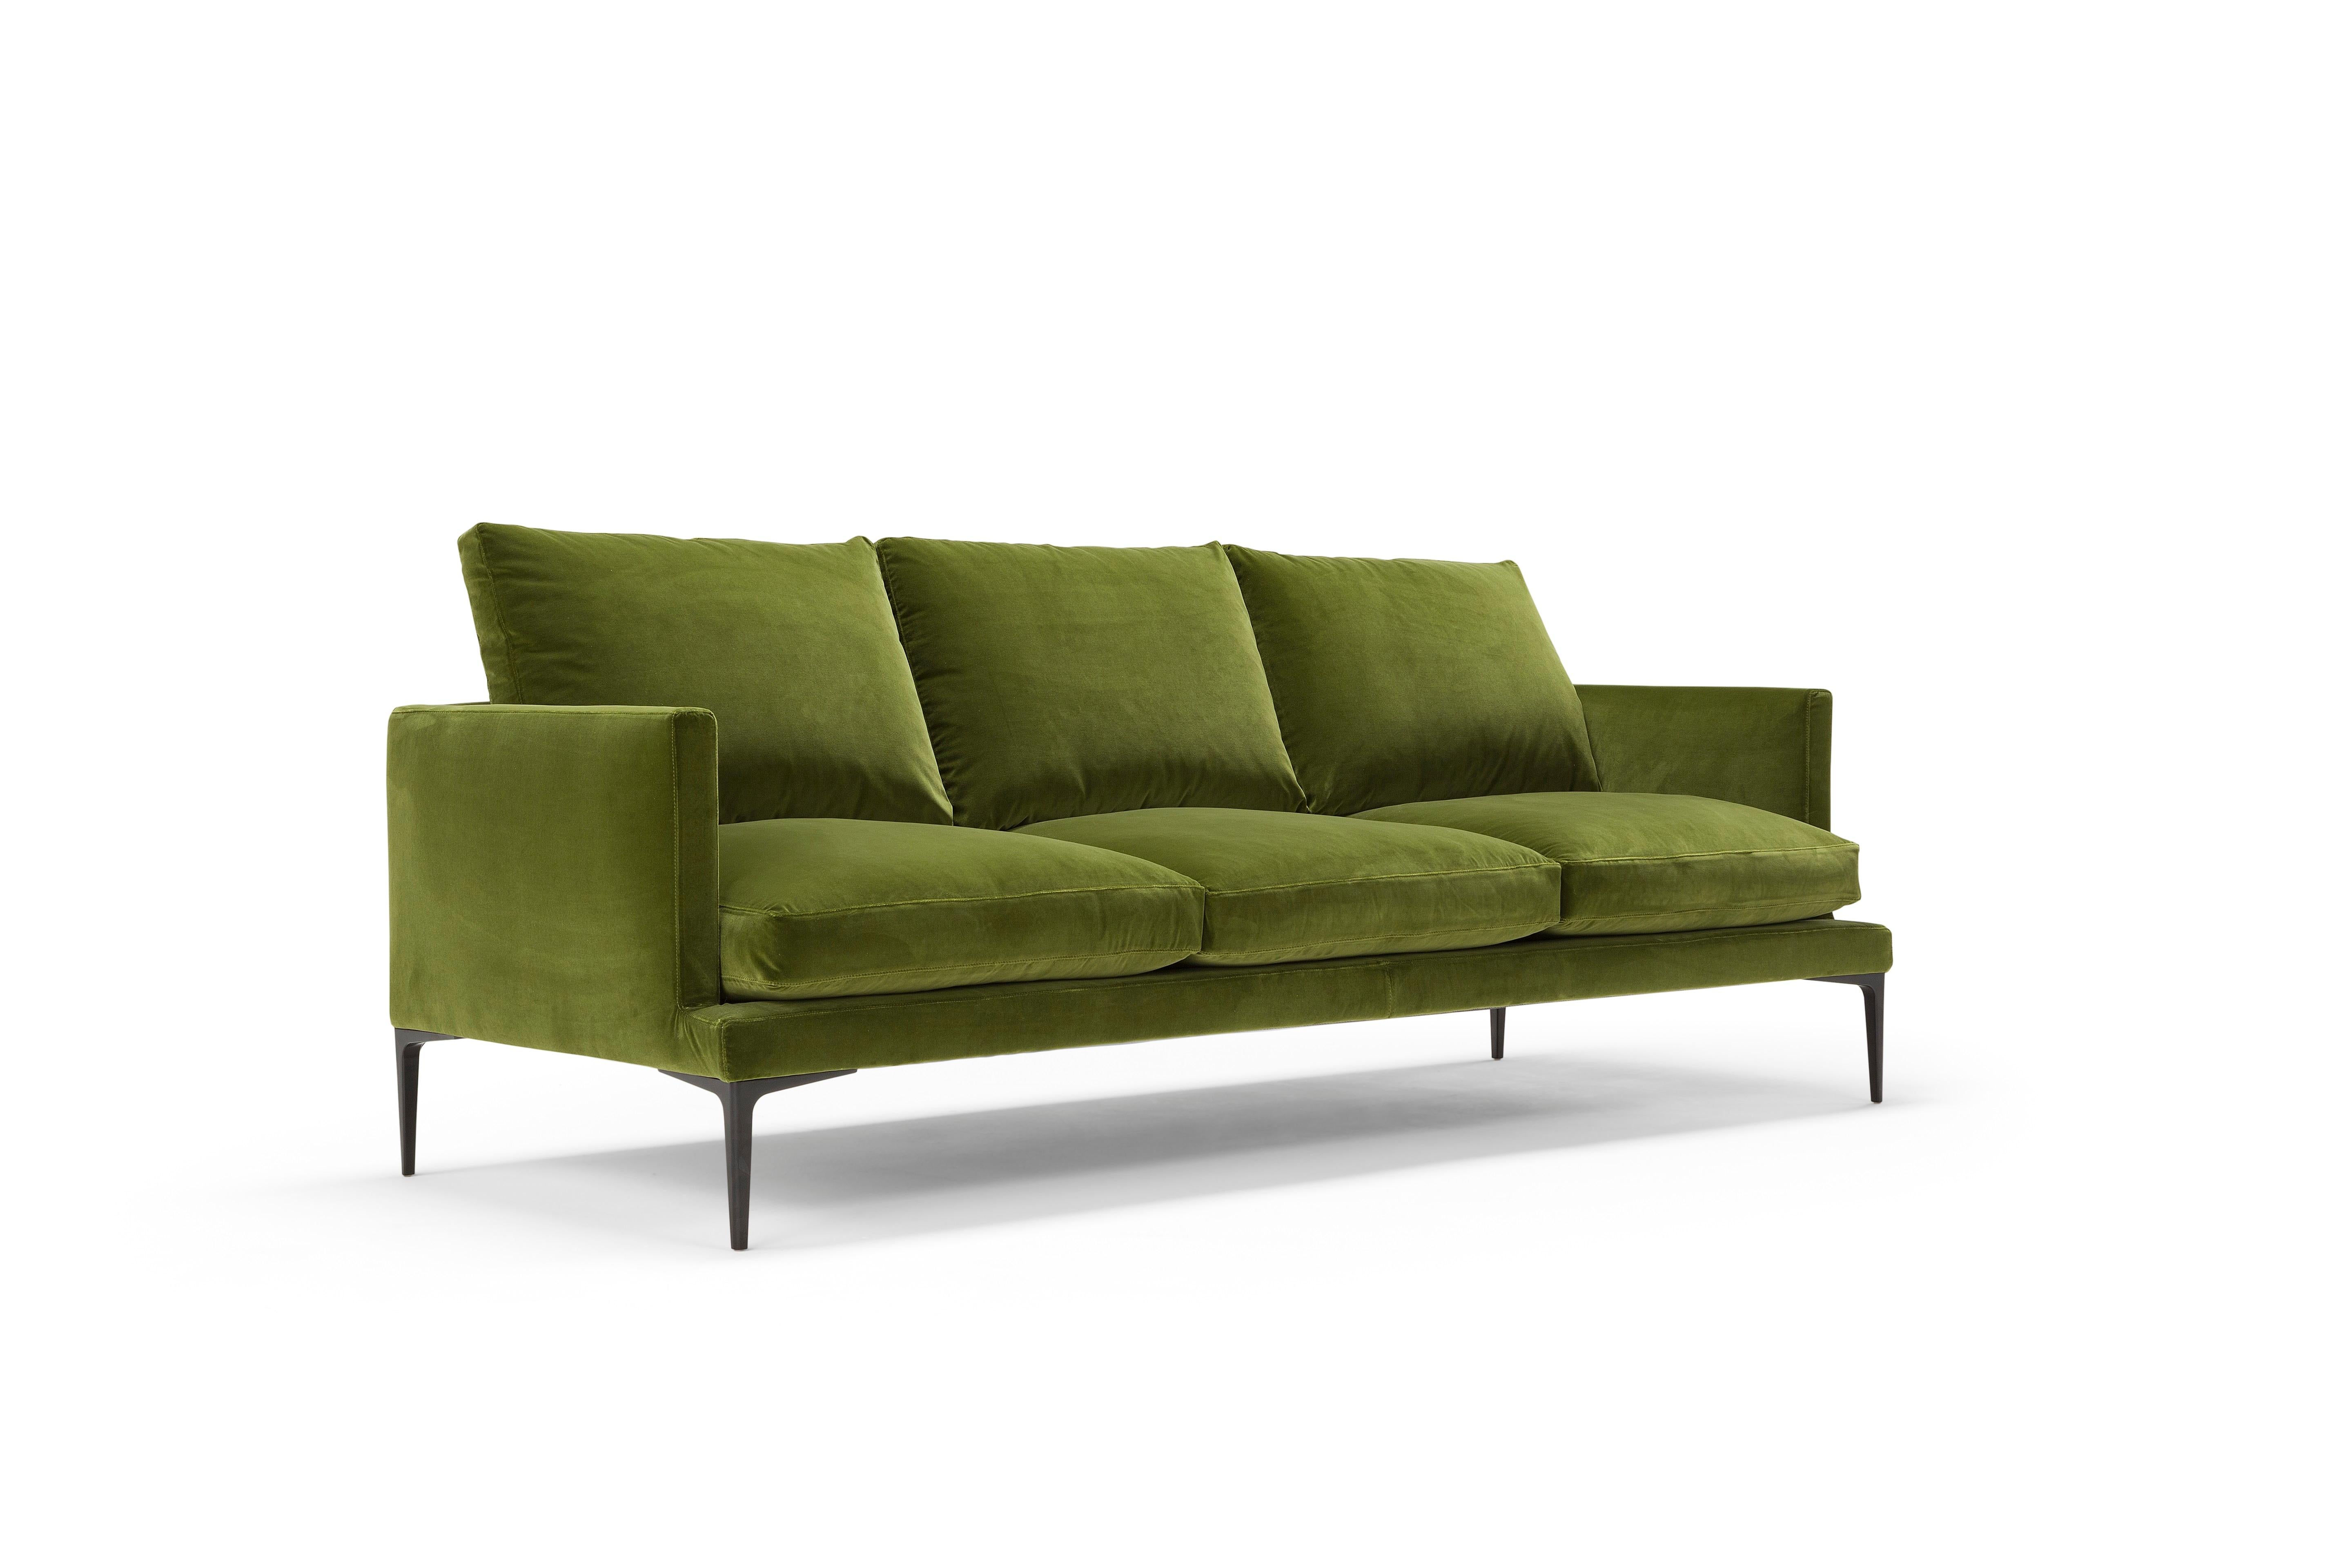 Das Sofa Segno hat klare und sichere Linien mit einer einladenden und bequemen Form. Es ist streng in seinen Linien, die Winkel und Kurven abwechseln, um das Gefühl von Weichheit zu verbessern und das Gefühl von Komfort zu fördern. Der Metallsockel,